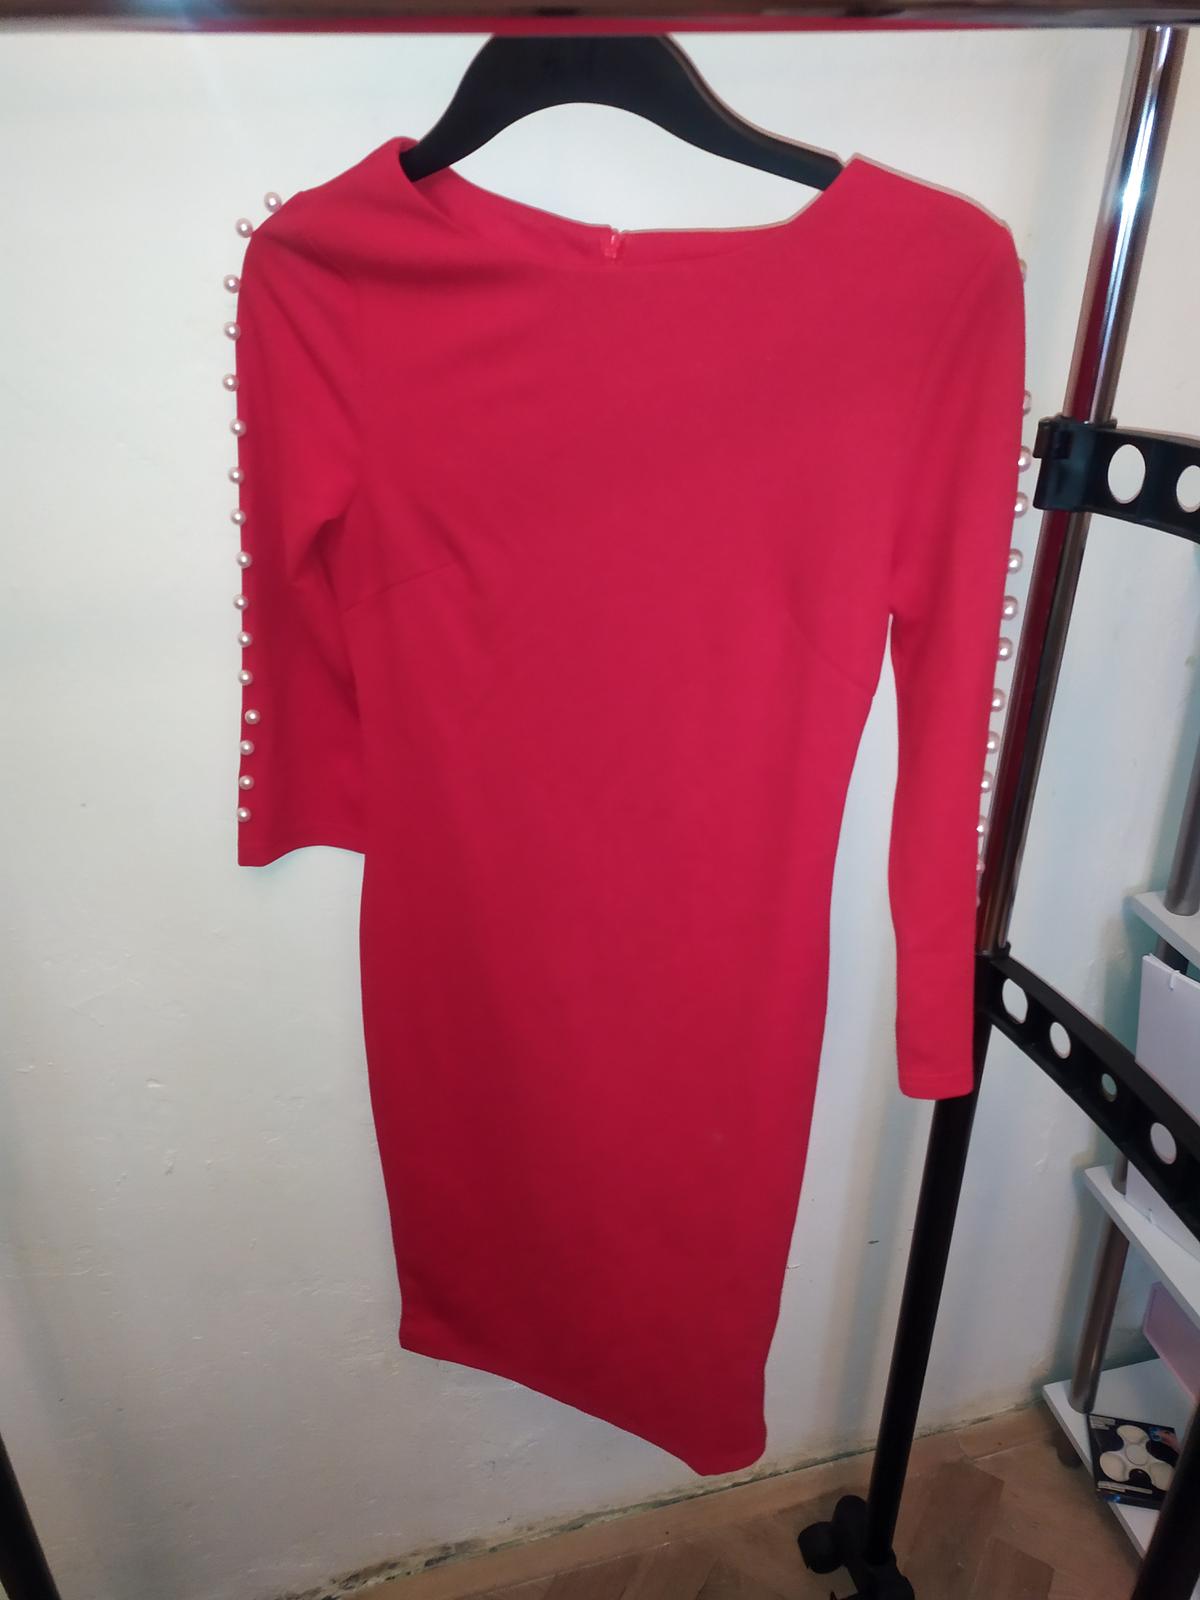 Červené šaty s perličkami SHEIN vel. XS - Obrázek č. 1